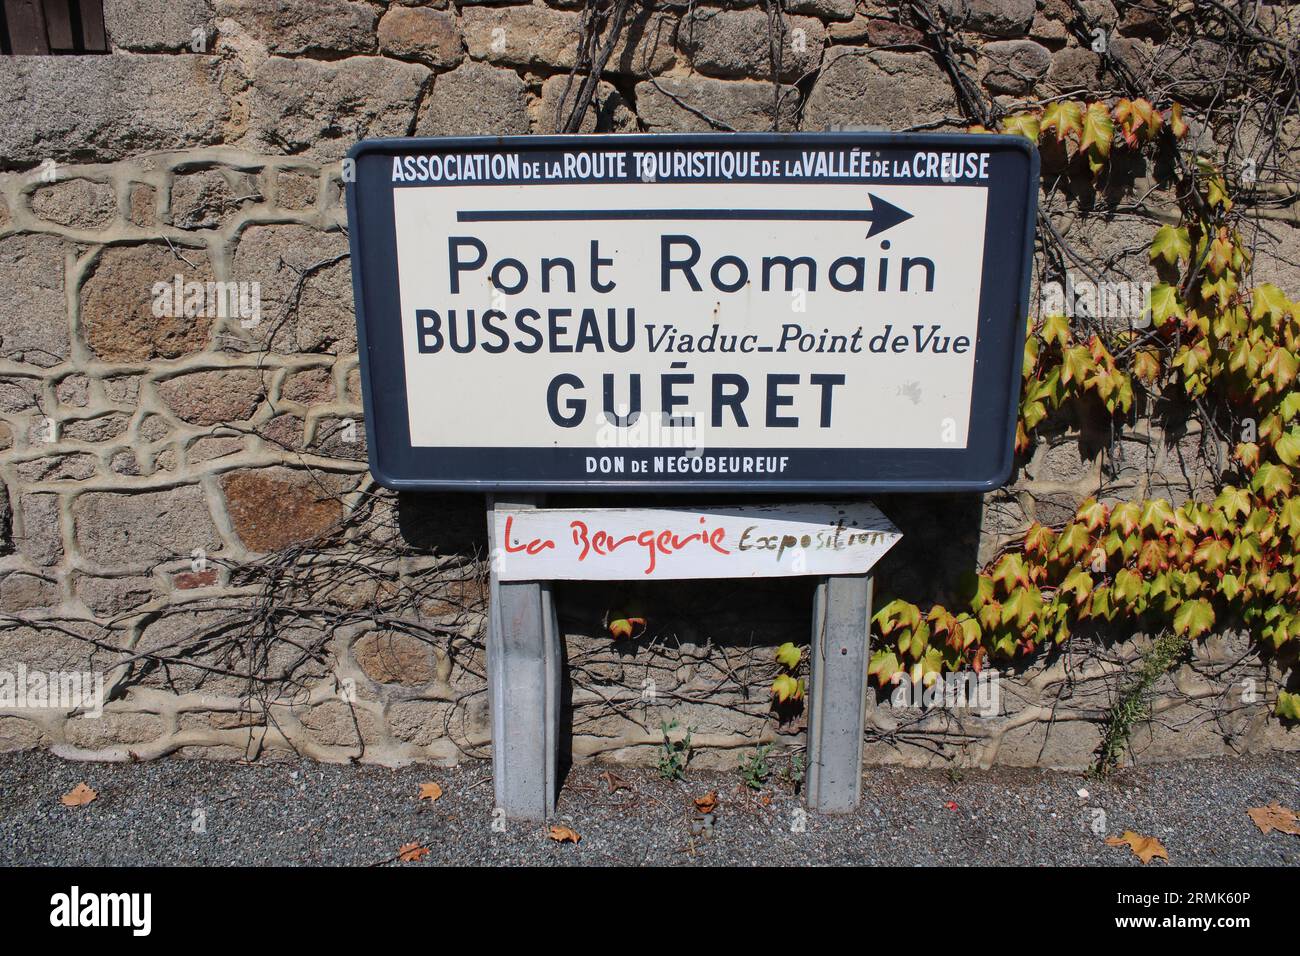 Vue d'un panneau touristique indiquant les directions vers le pont romain et sur la ville de Guéret situé ici à Moutier d'Ahun dans le centre rural de la France. Banque D'Images